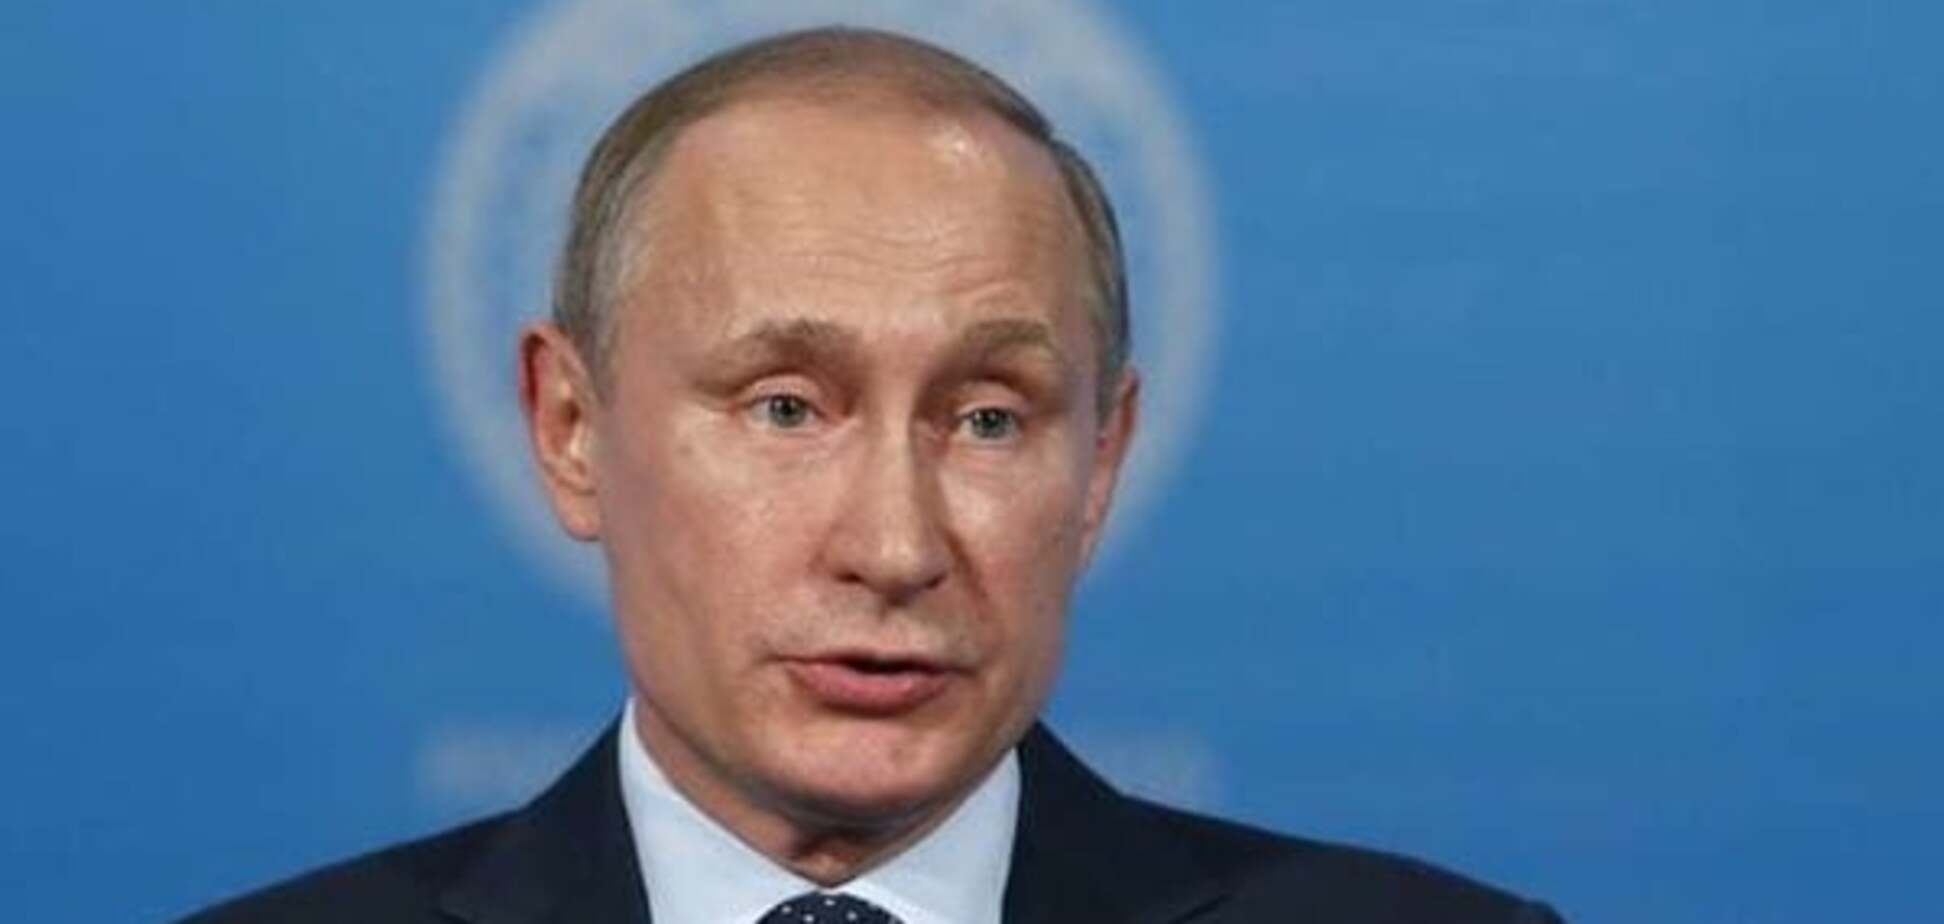 Умерла так умерла: Шевцова рассказала, как Путин приближается к своему краху